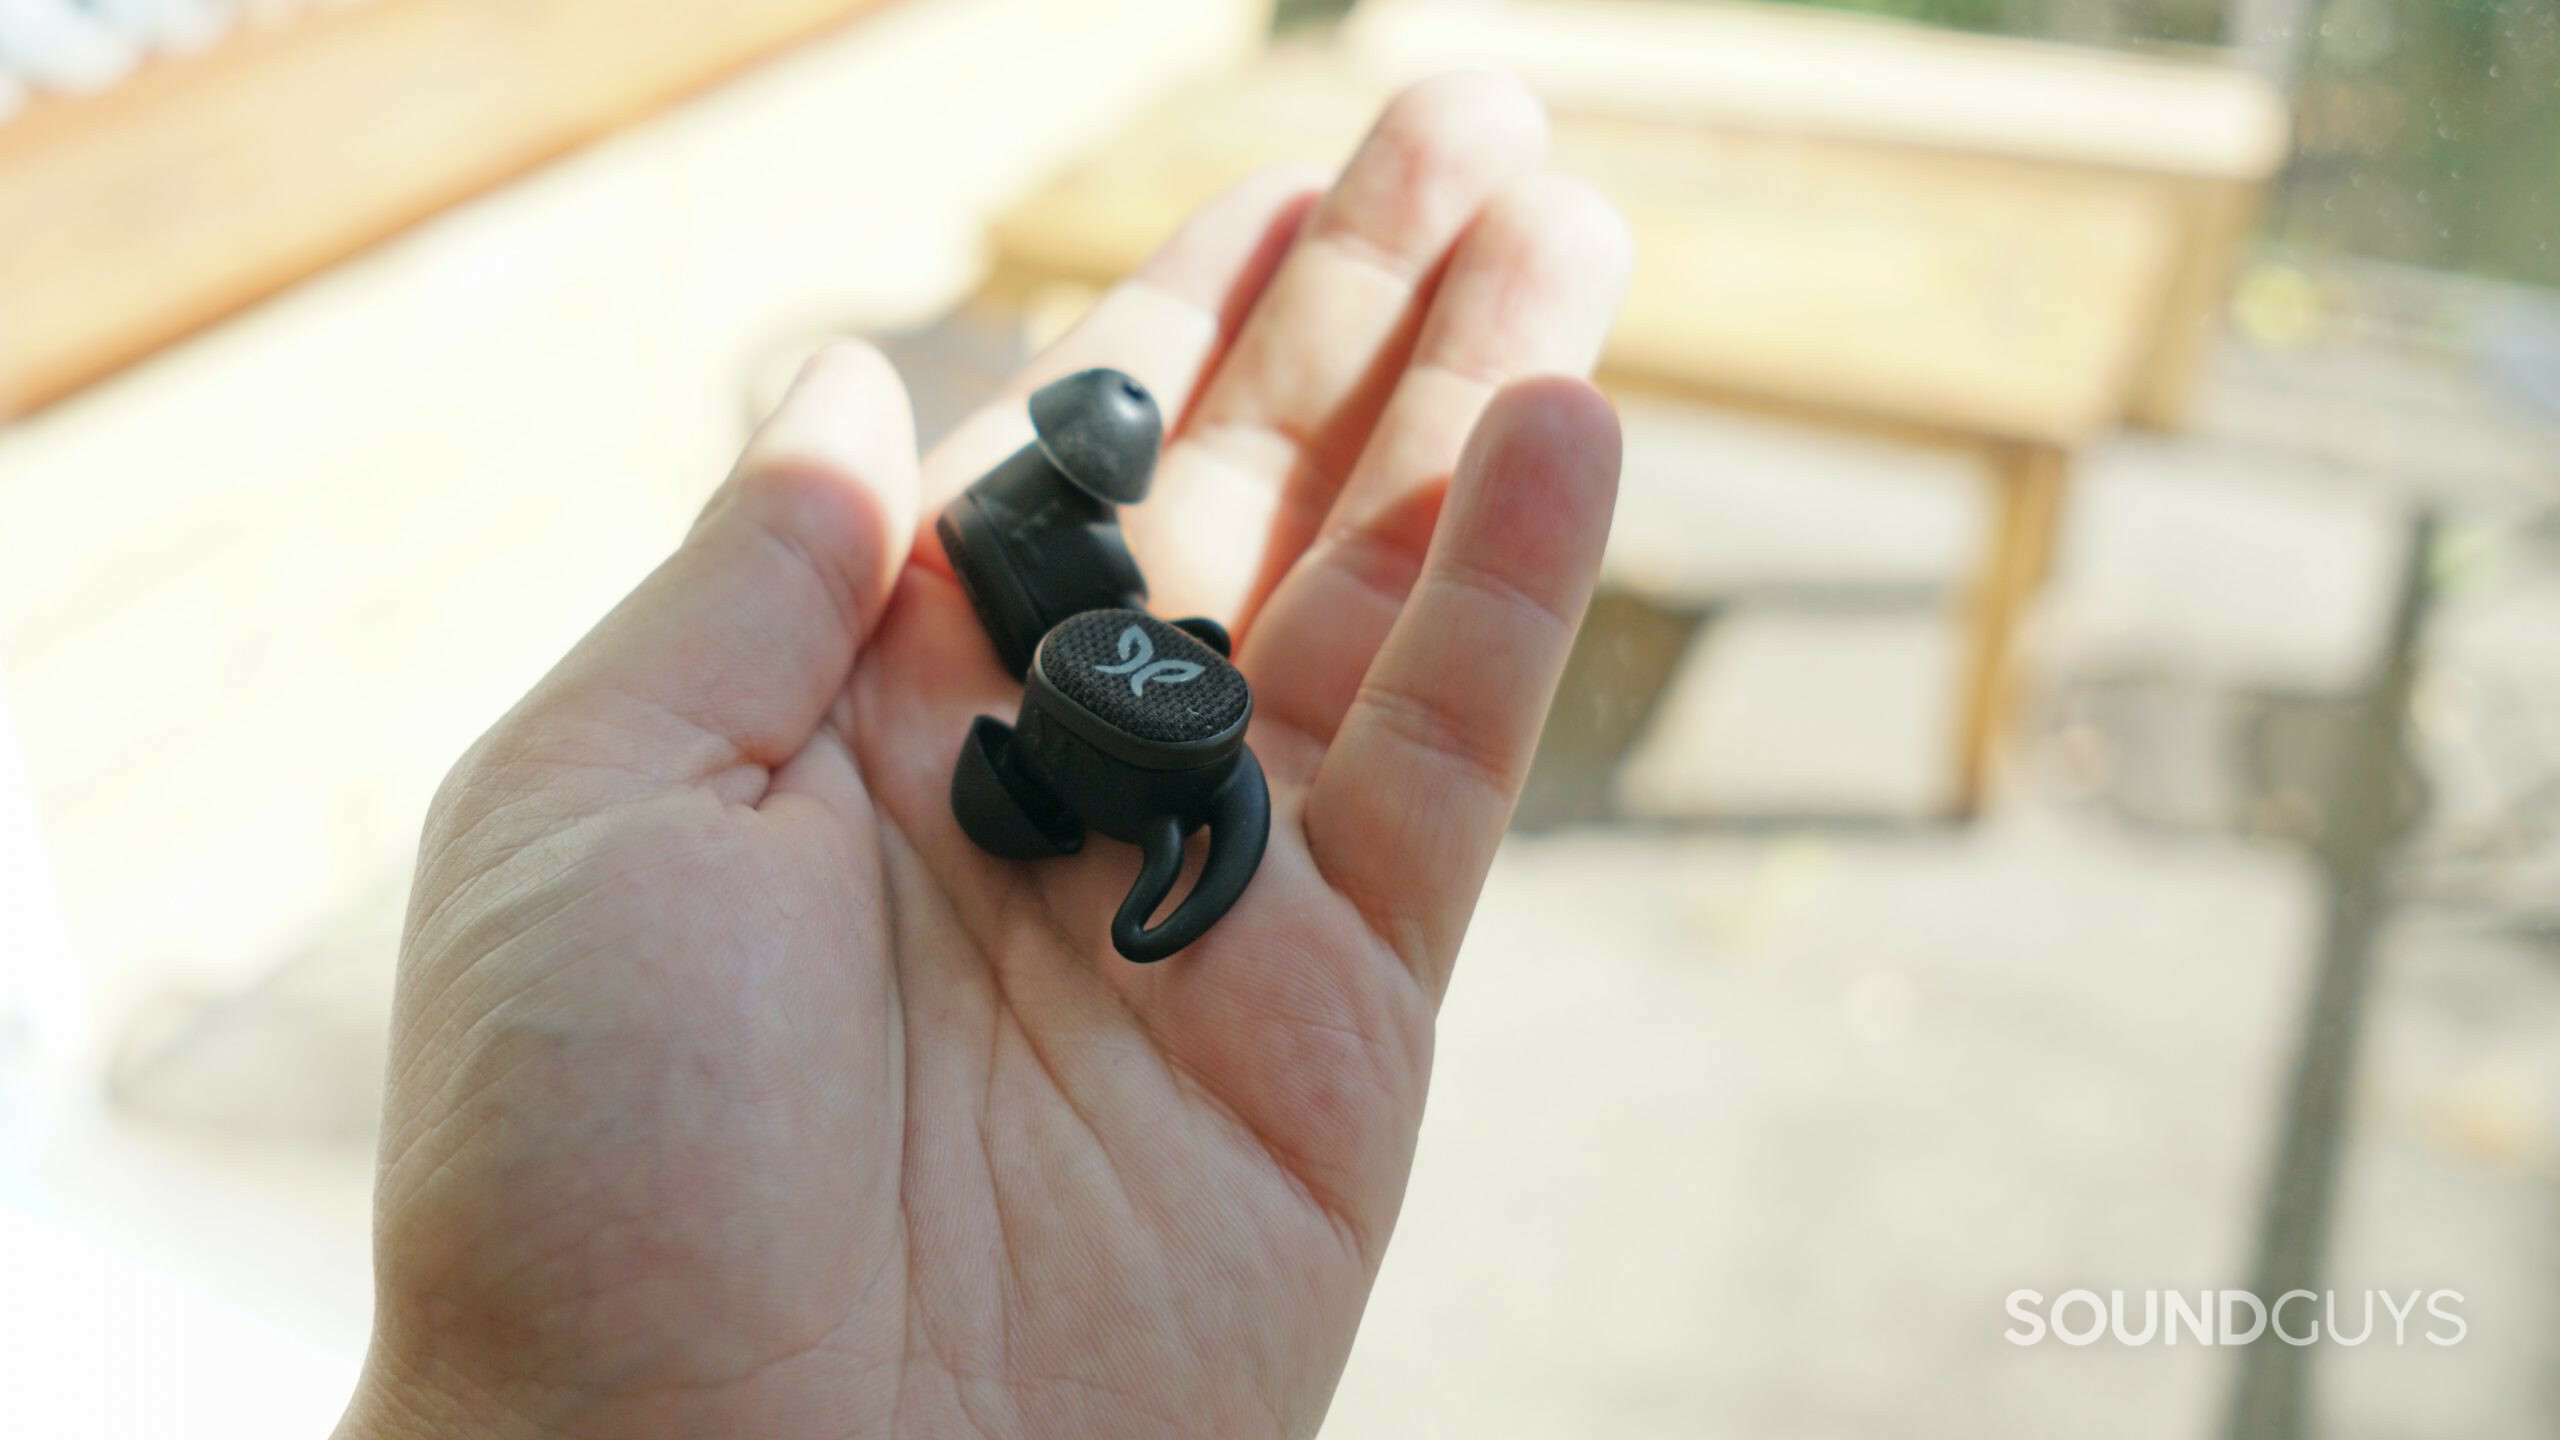 Jaybird Vista 2 earbuds in hand outdoors.